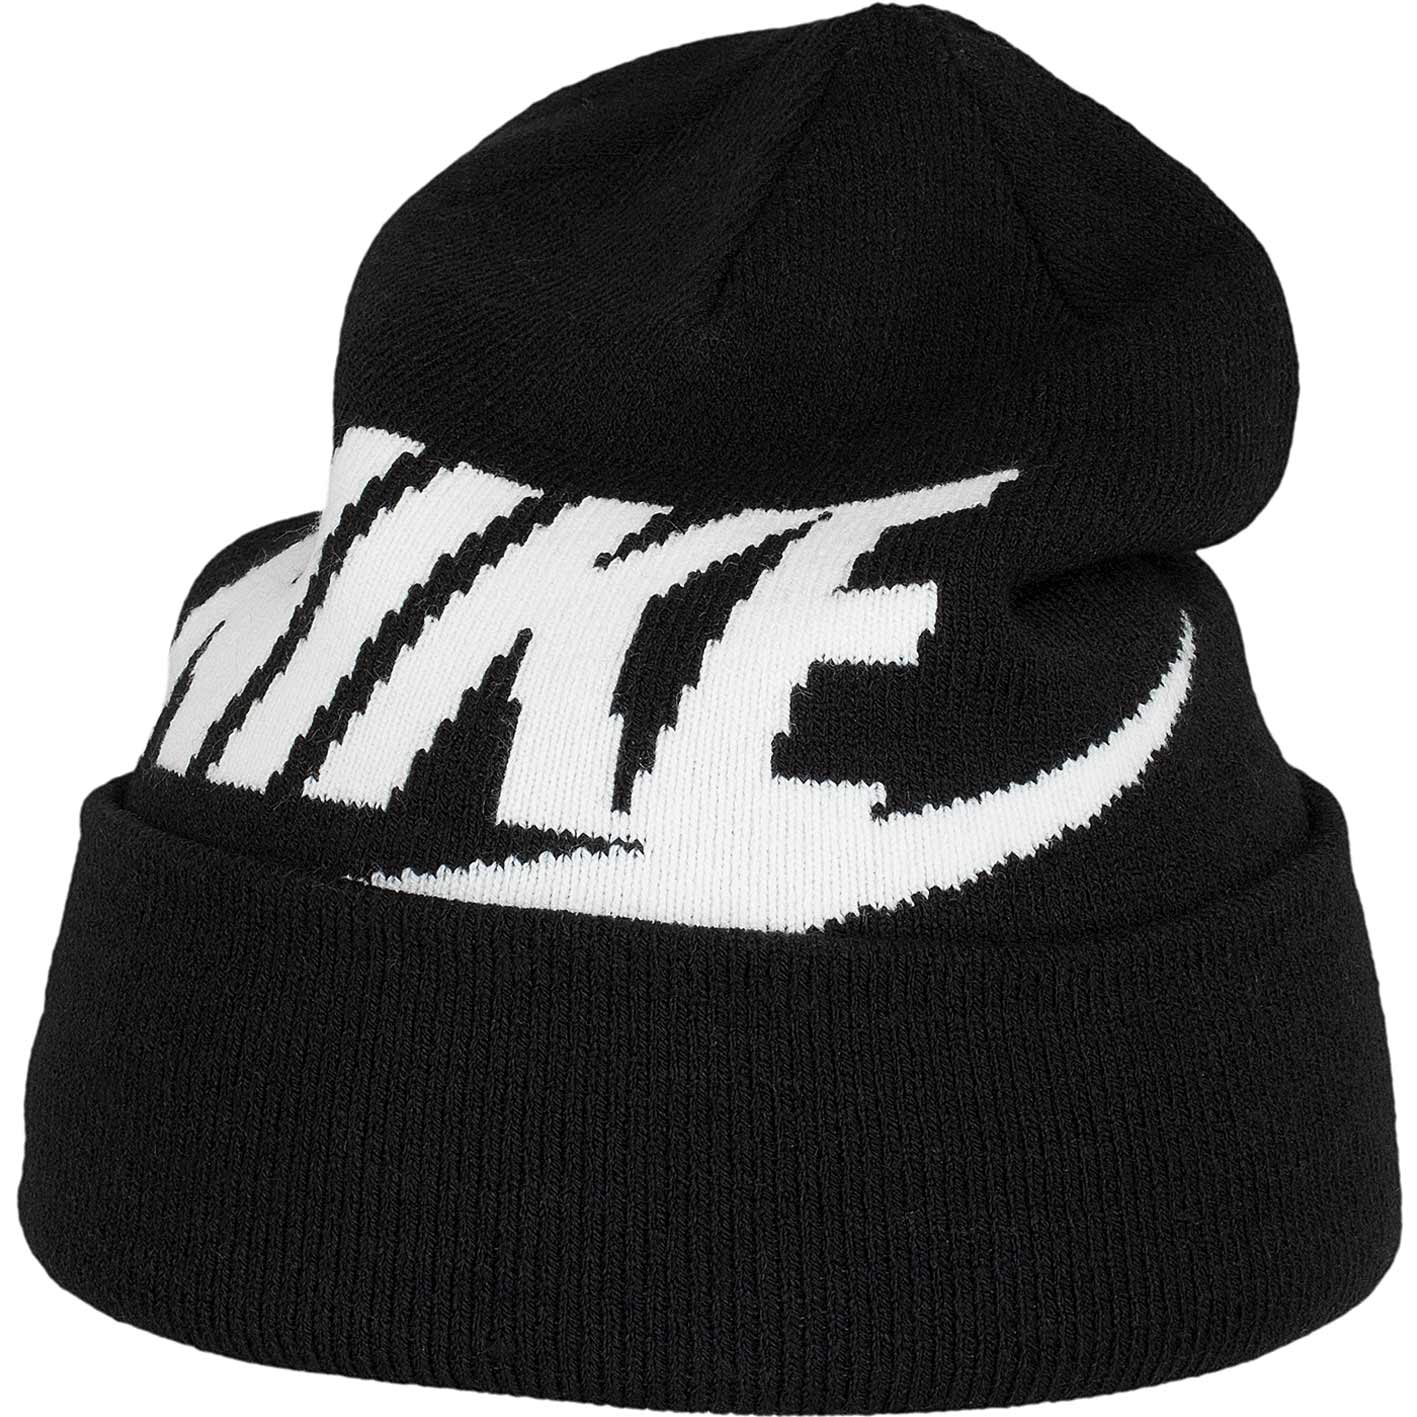 ☆ Nike Kinder Beanie Cuffed Pom schwarz/weiß - hier bestellen!